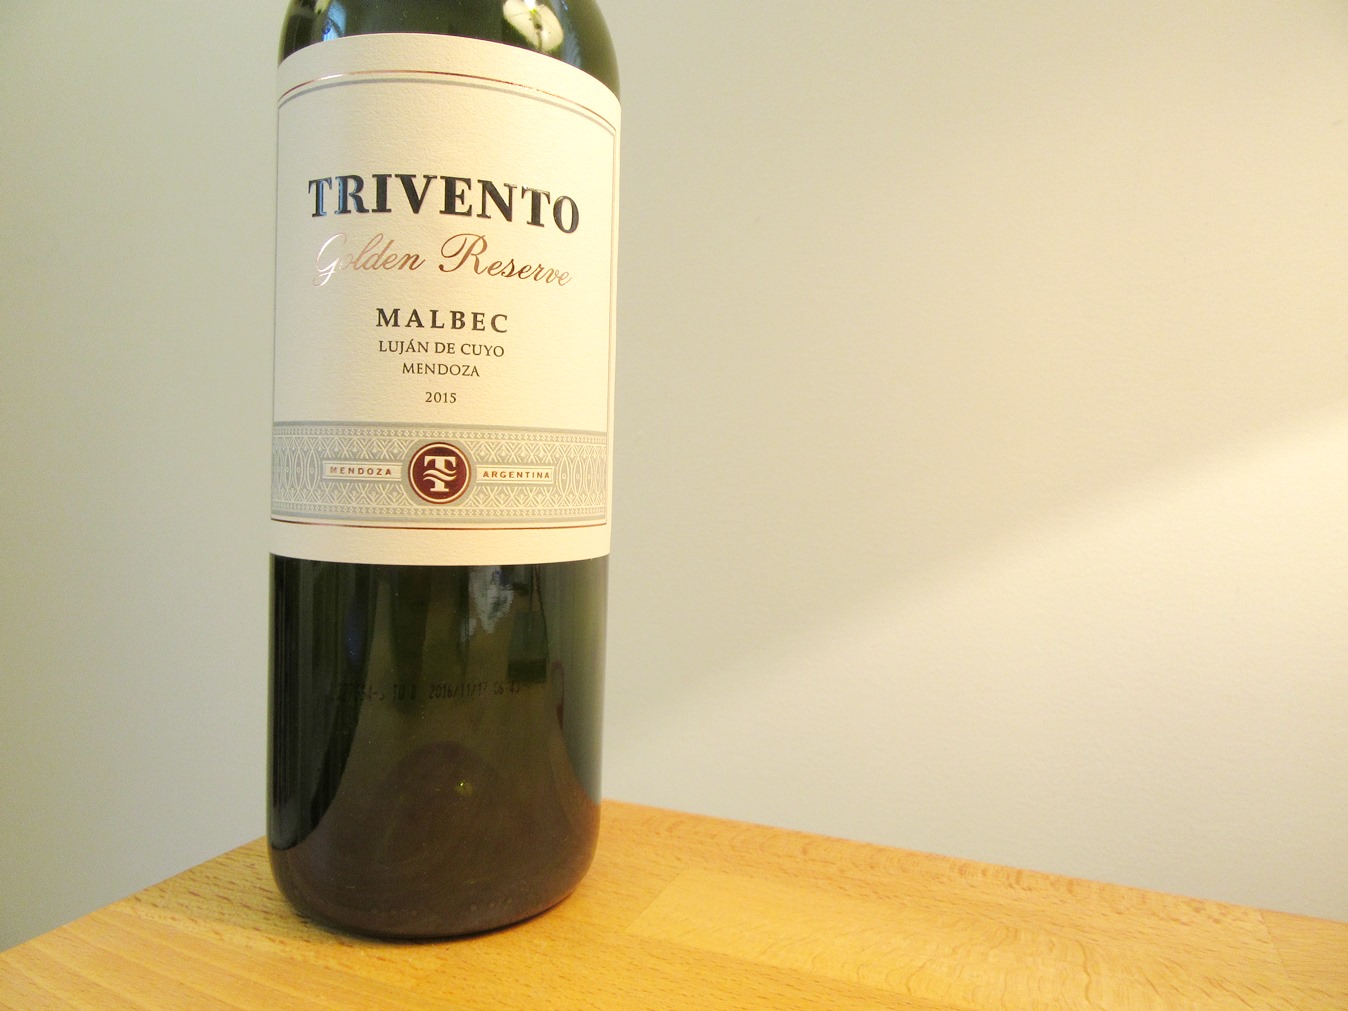 Trivento, Golden Reserve Malbec 2015, Luján de Cuyro, Mendoza, Argentina, Wine Casual